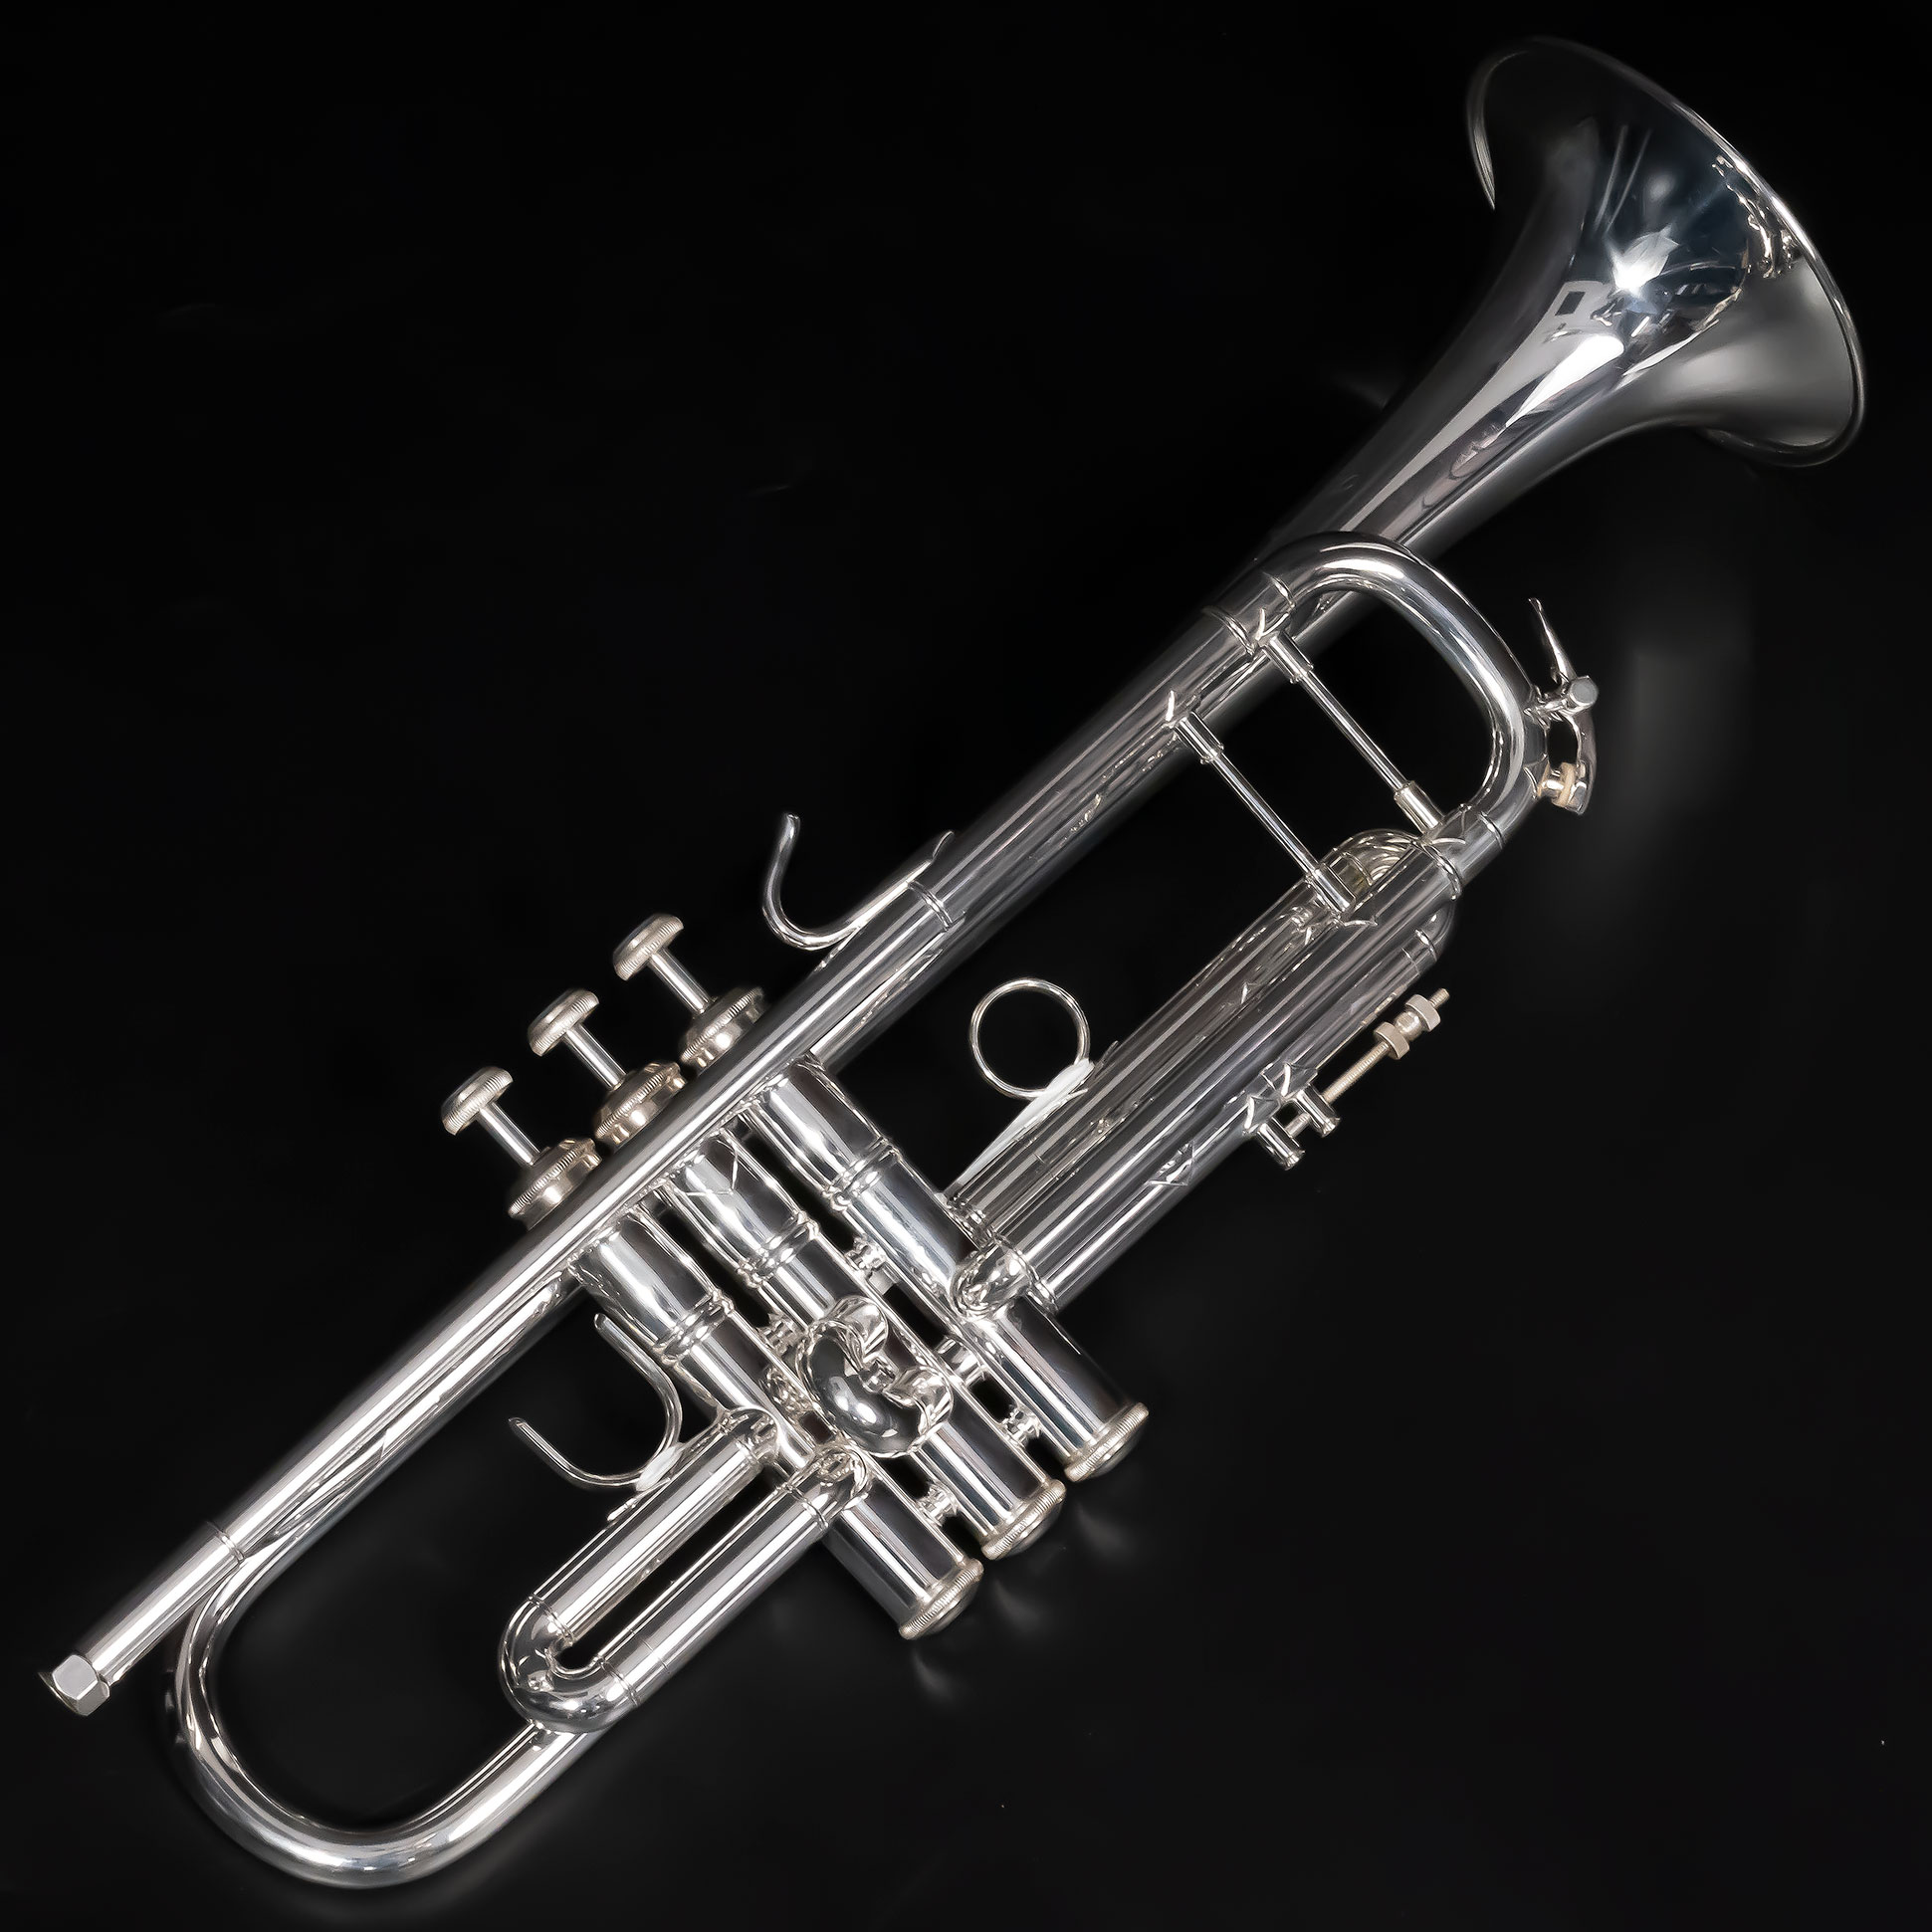 Stトランペット Bach Stradivarius 37G - 管楽器・吹奏楽器